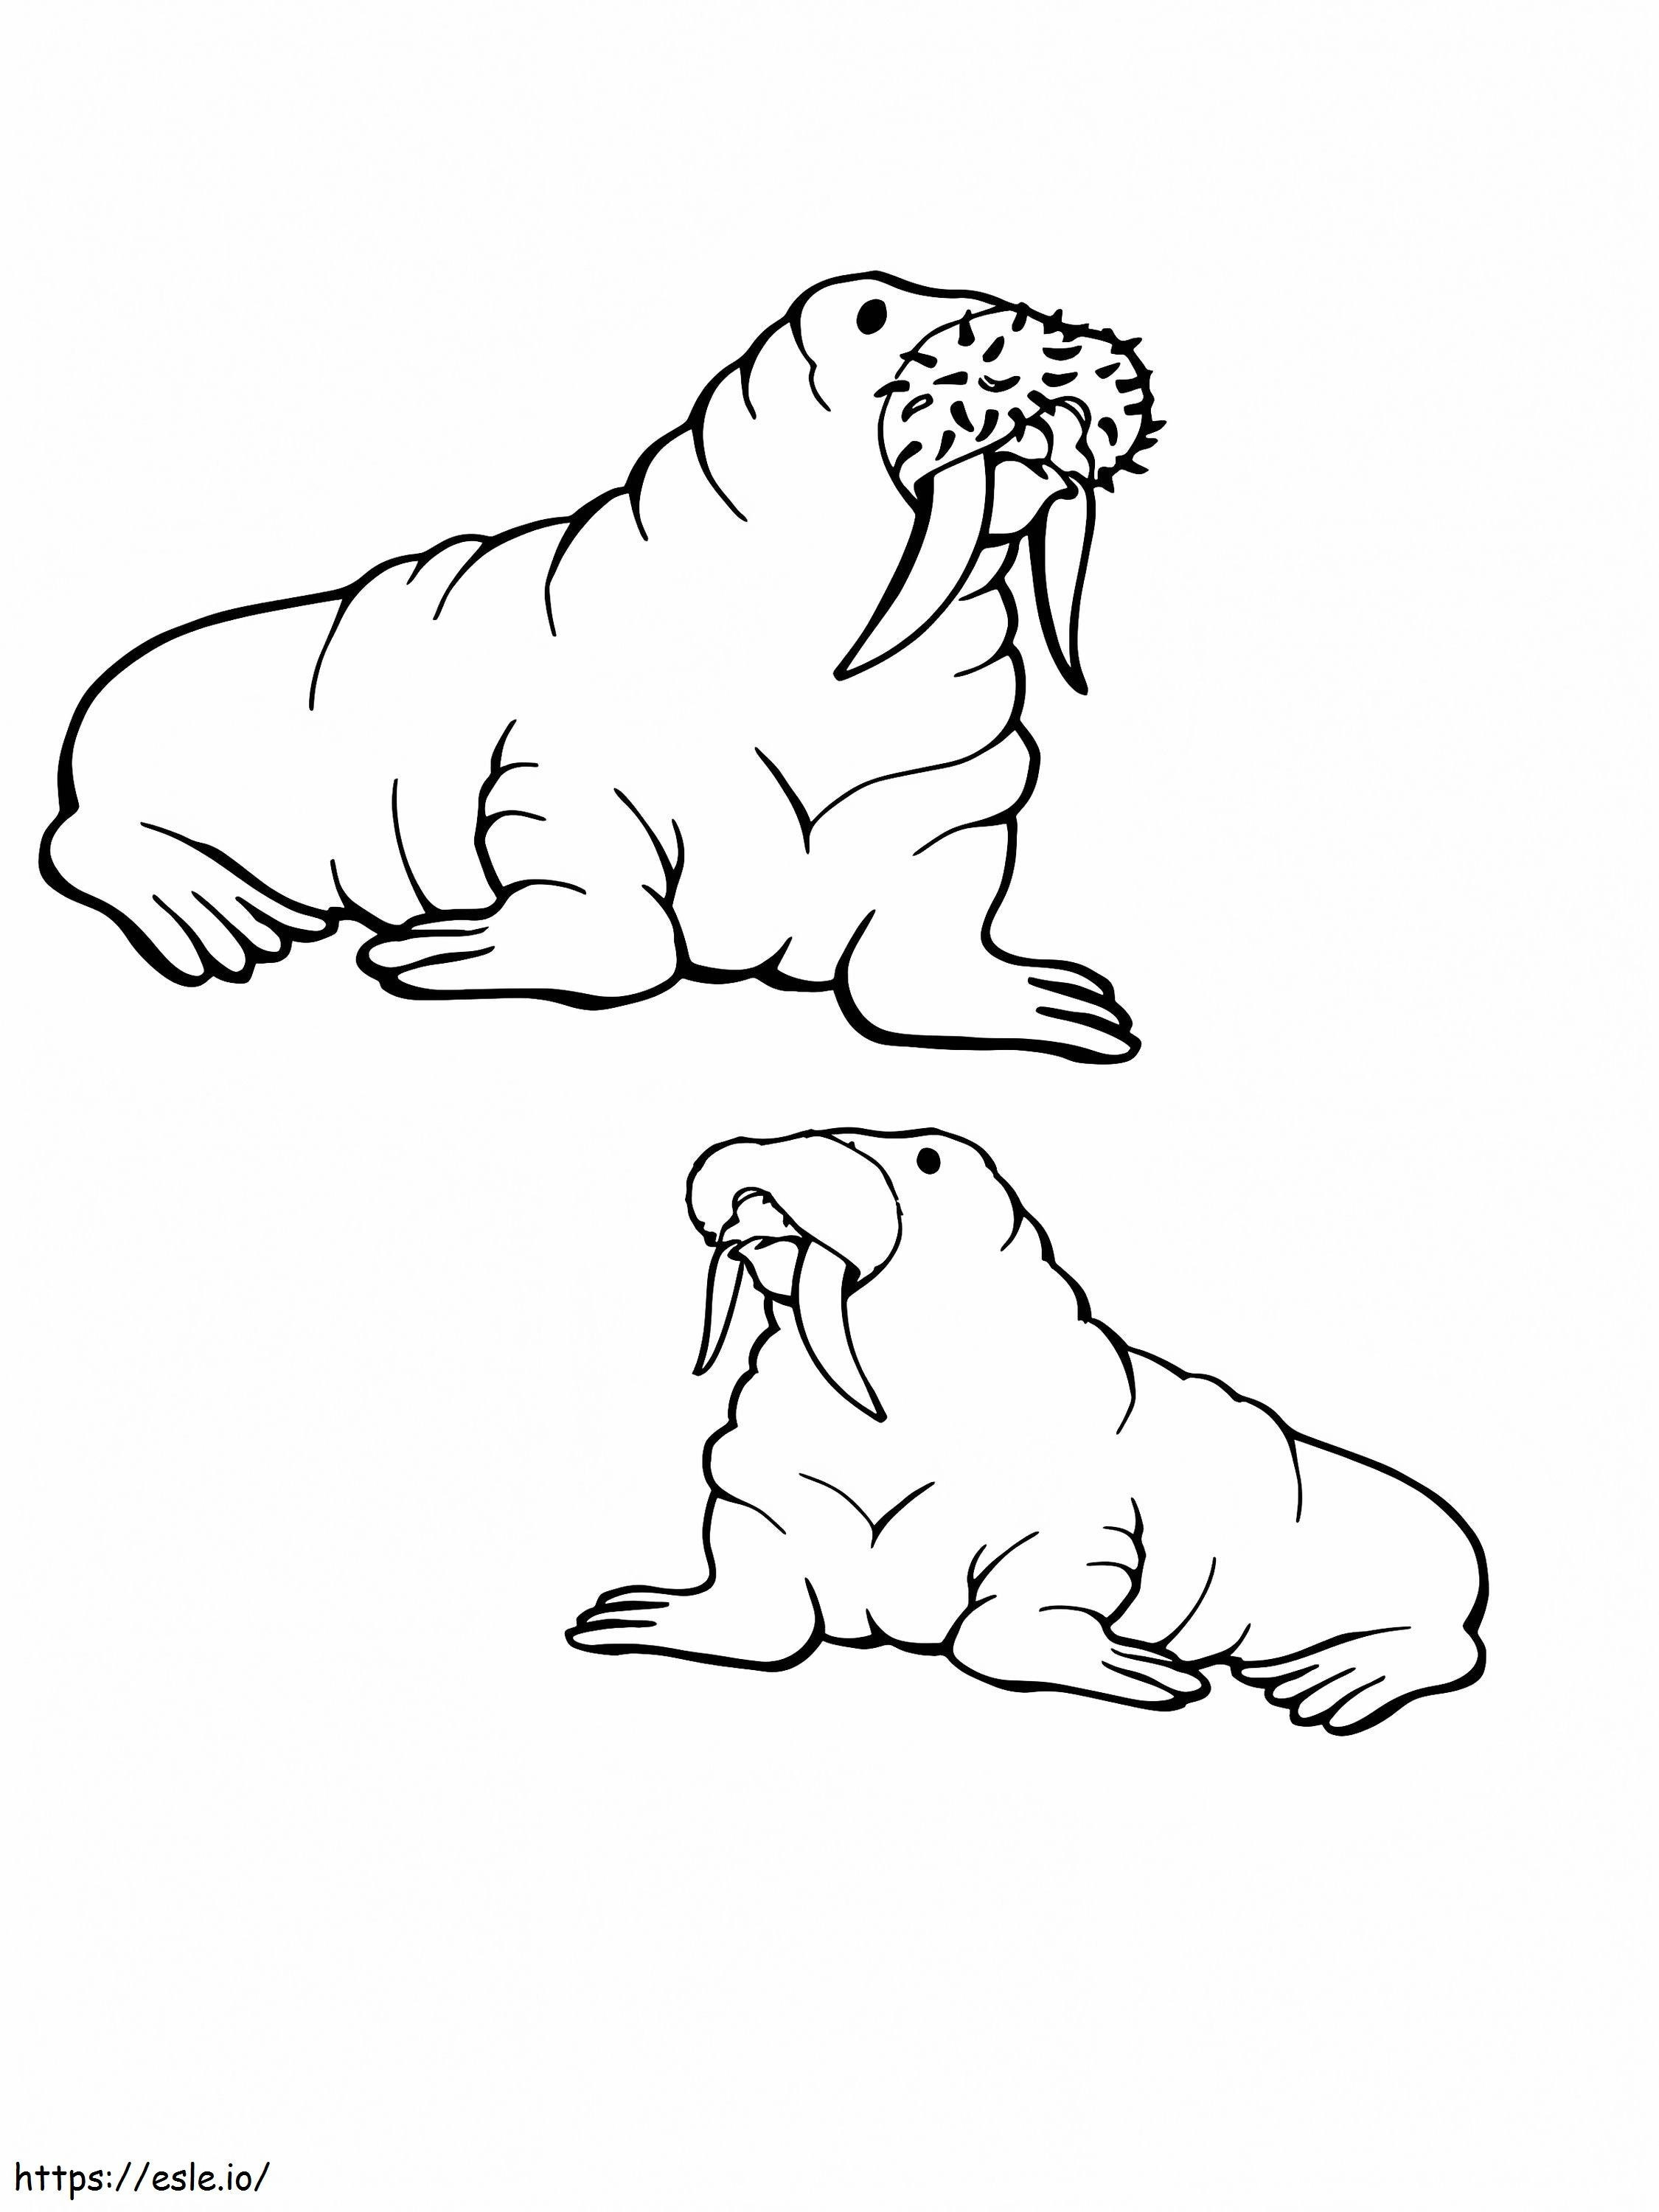 Zwei alte Walrosse arktische Tiere ausmalbilder